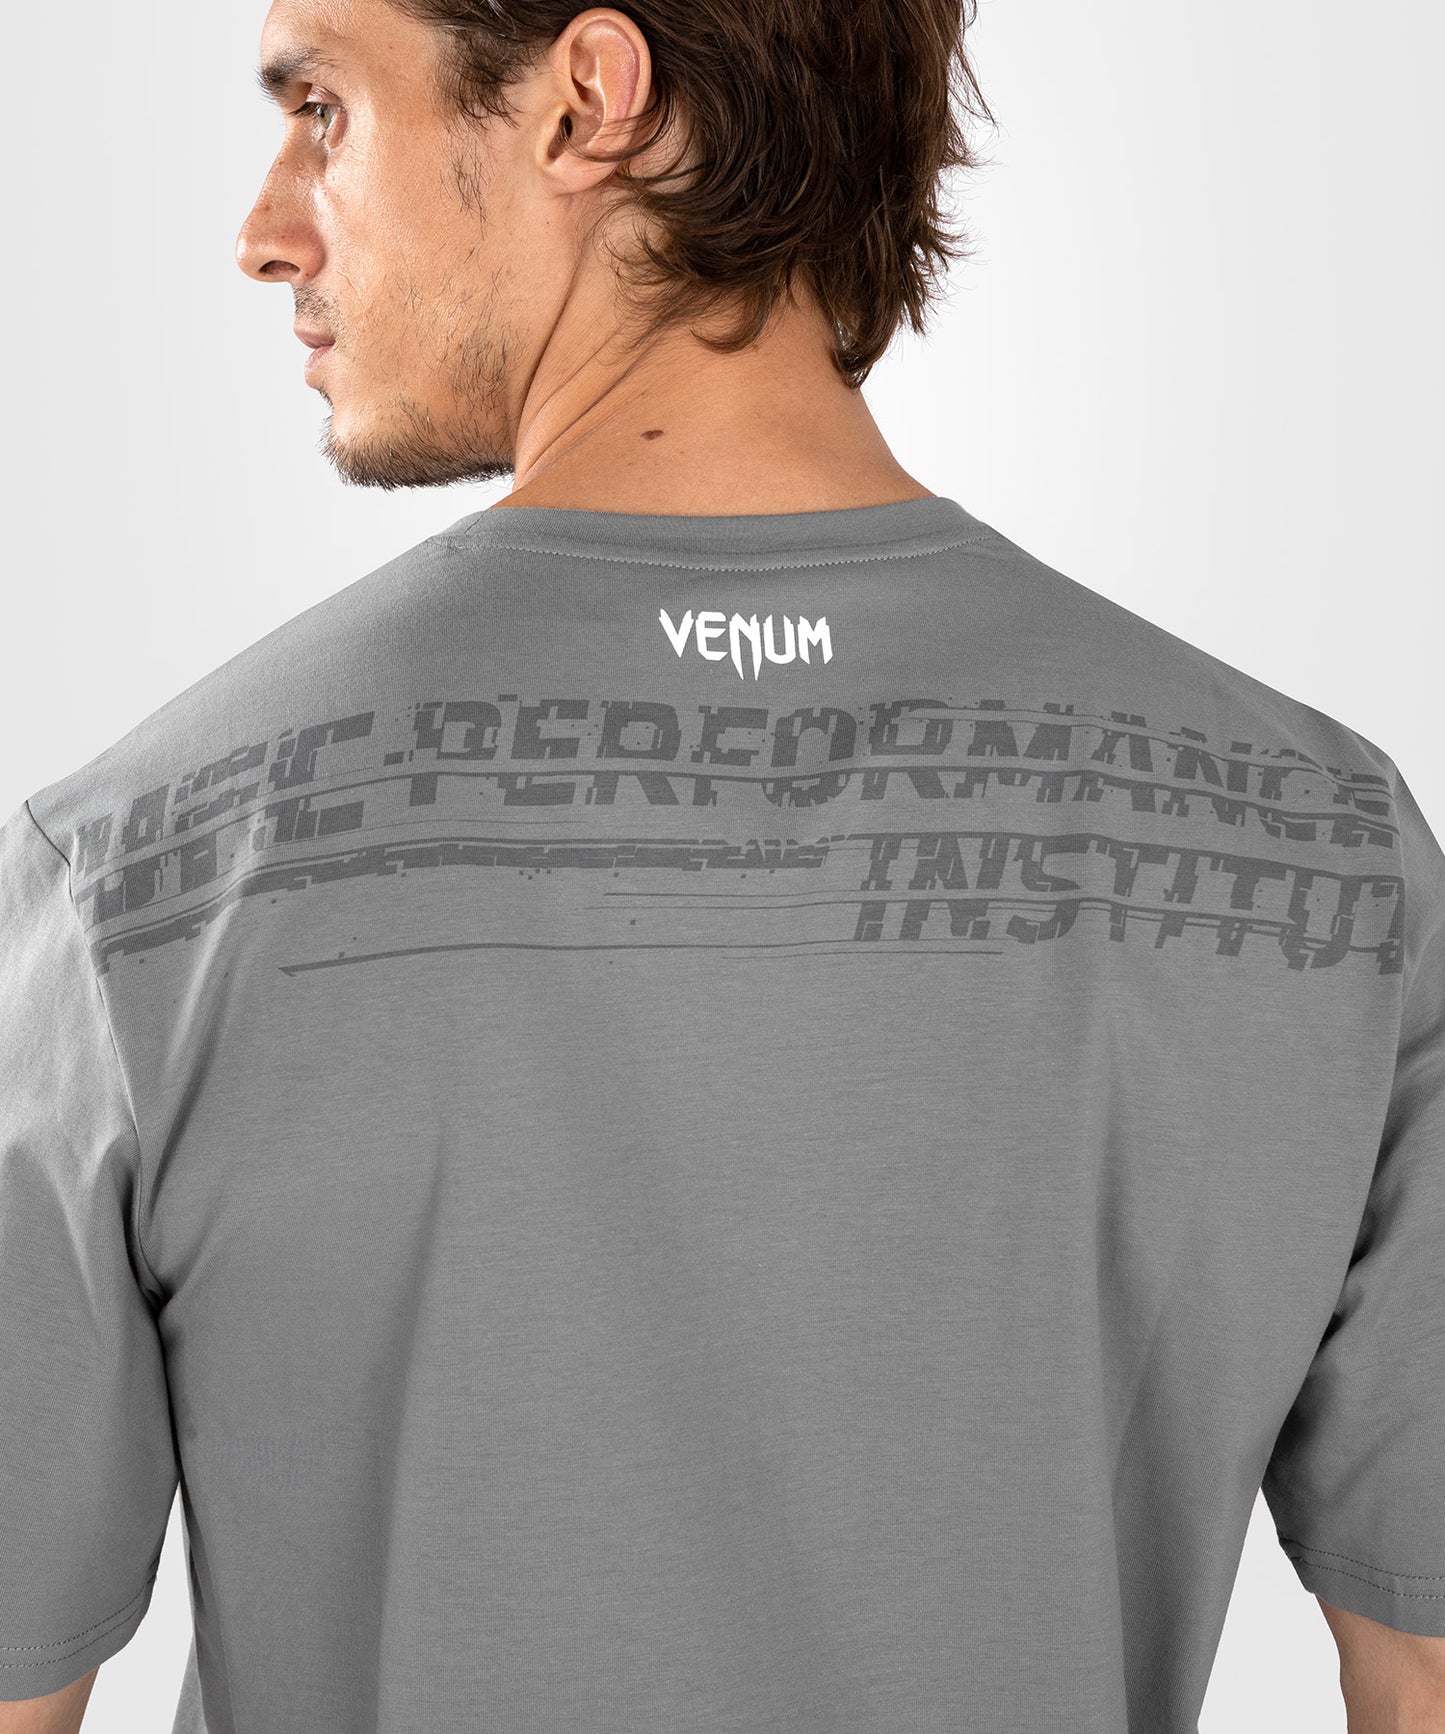 UFC Venum Performance Institute 2.0 Men’s T-Shirt -Red